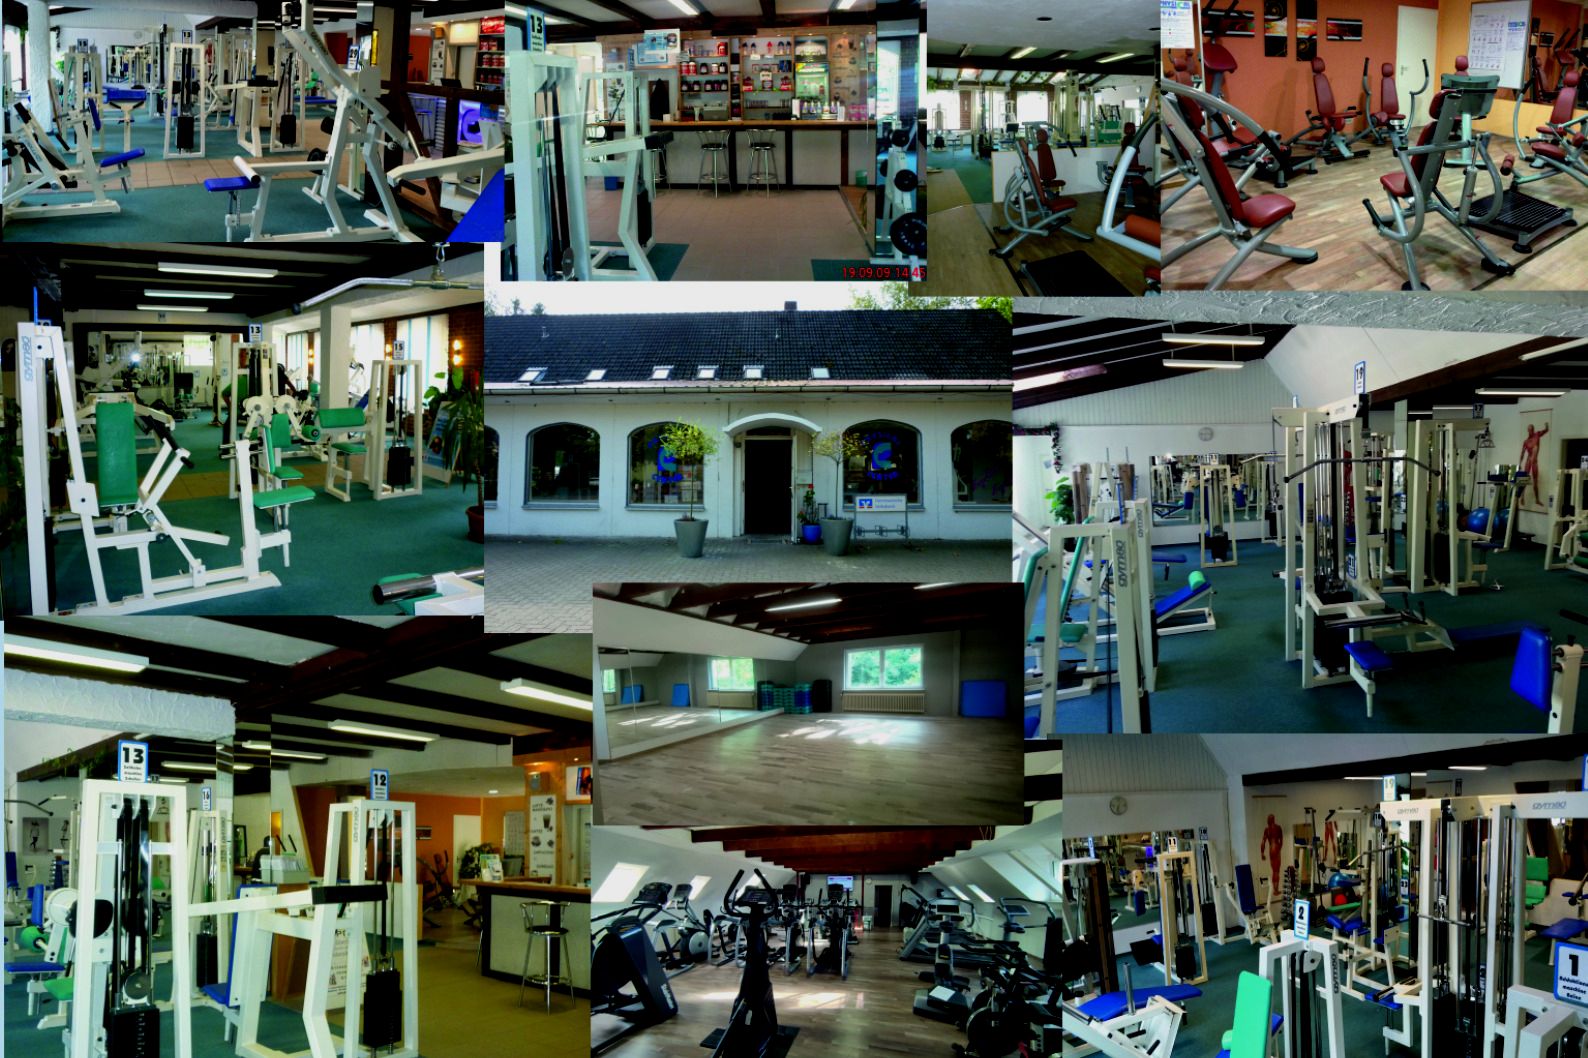 BKM Physical Center Fitness